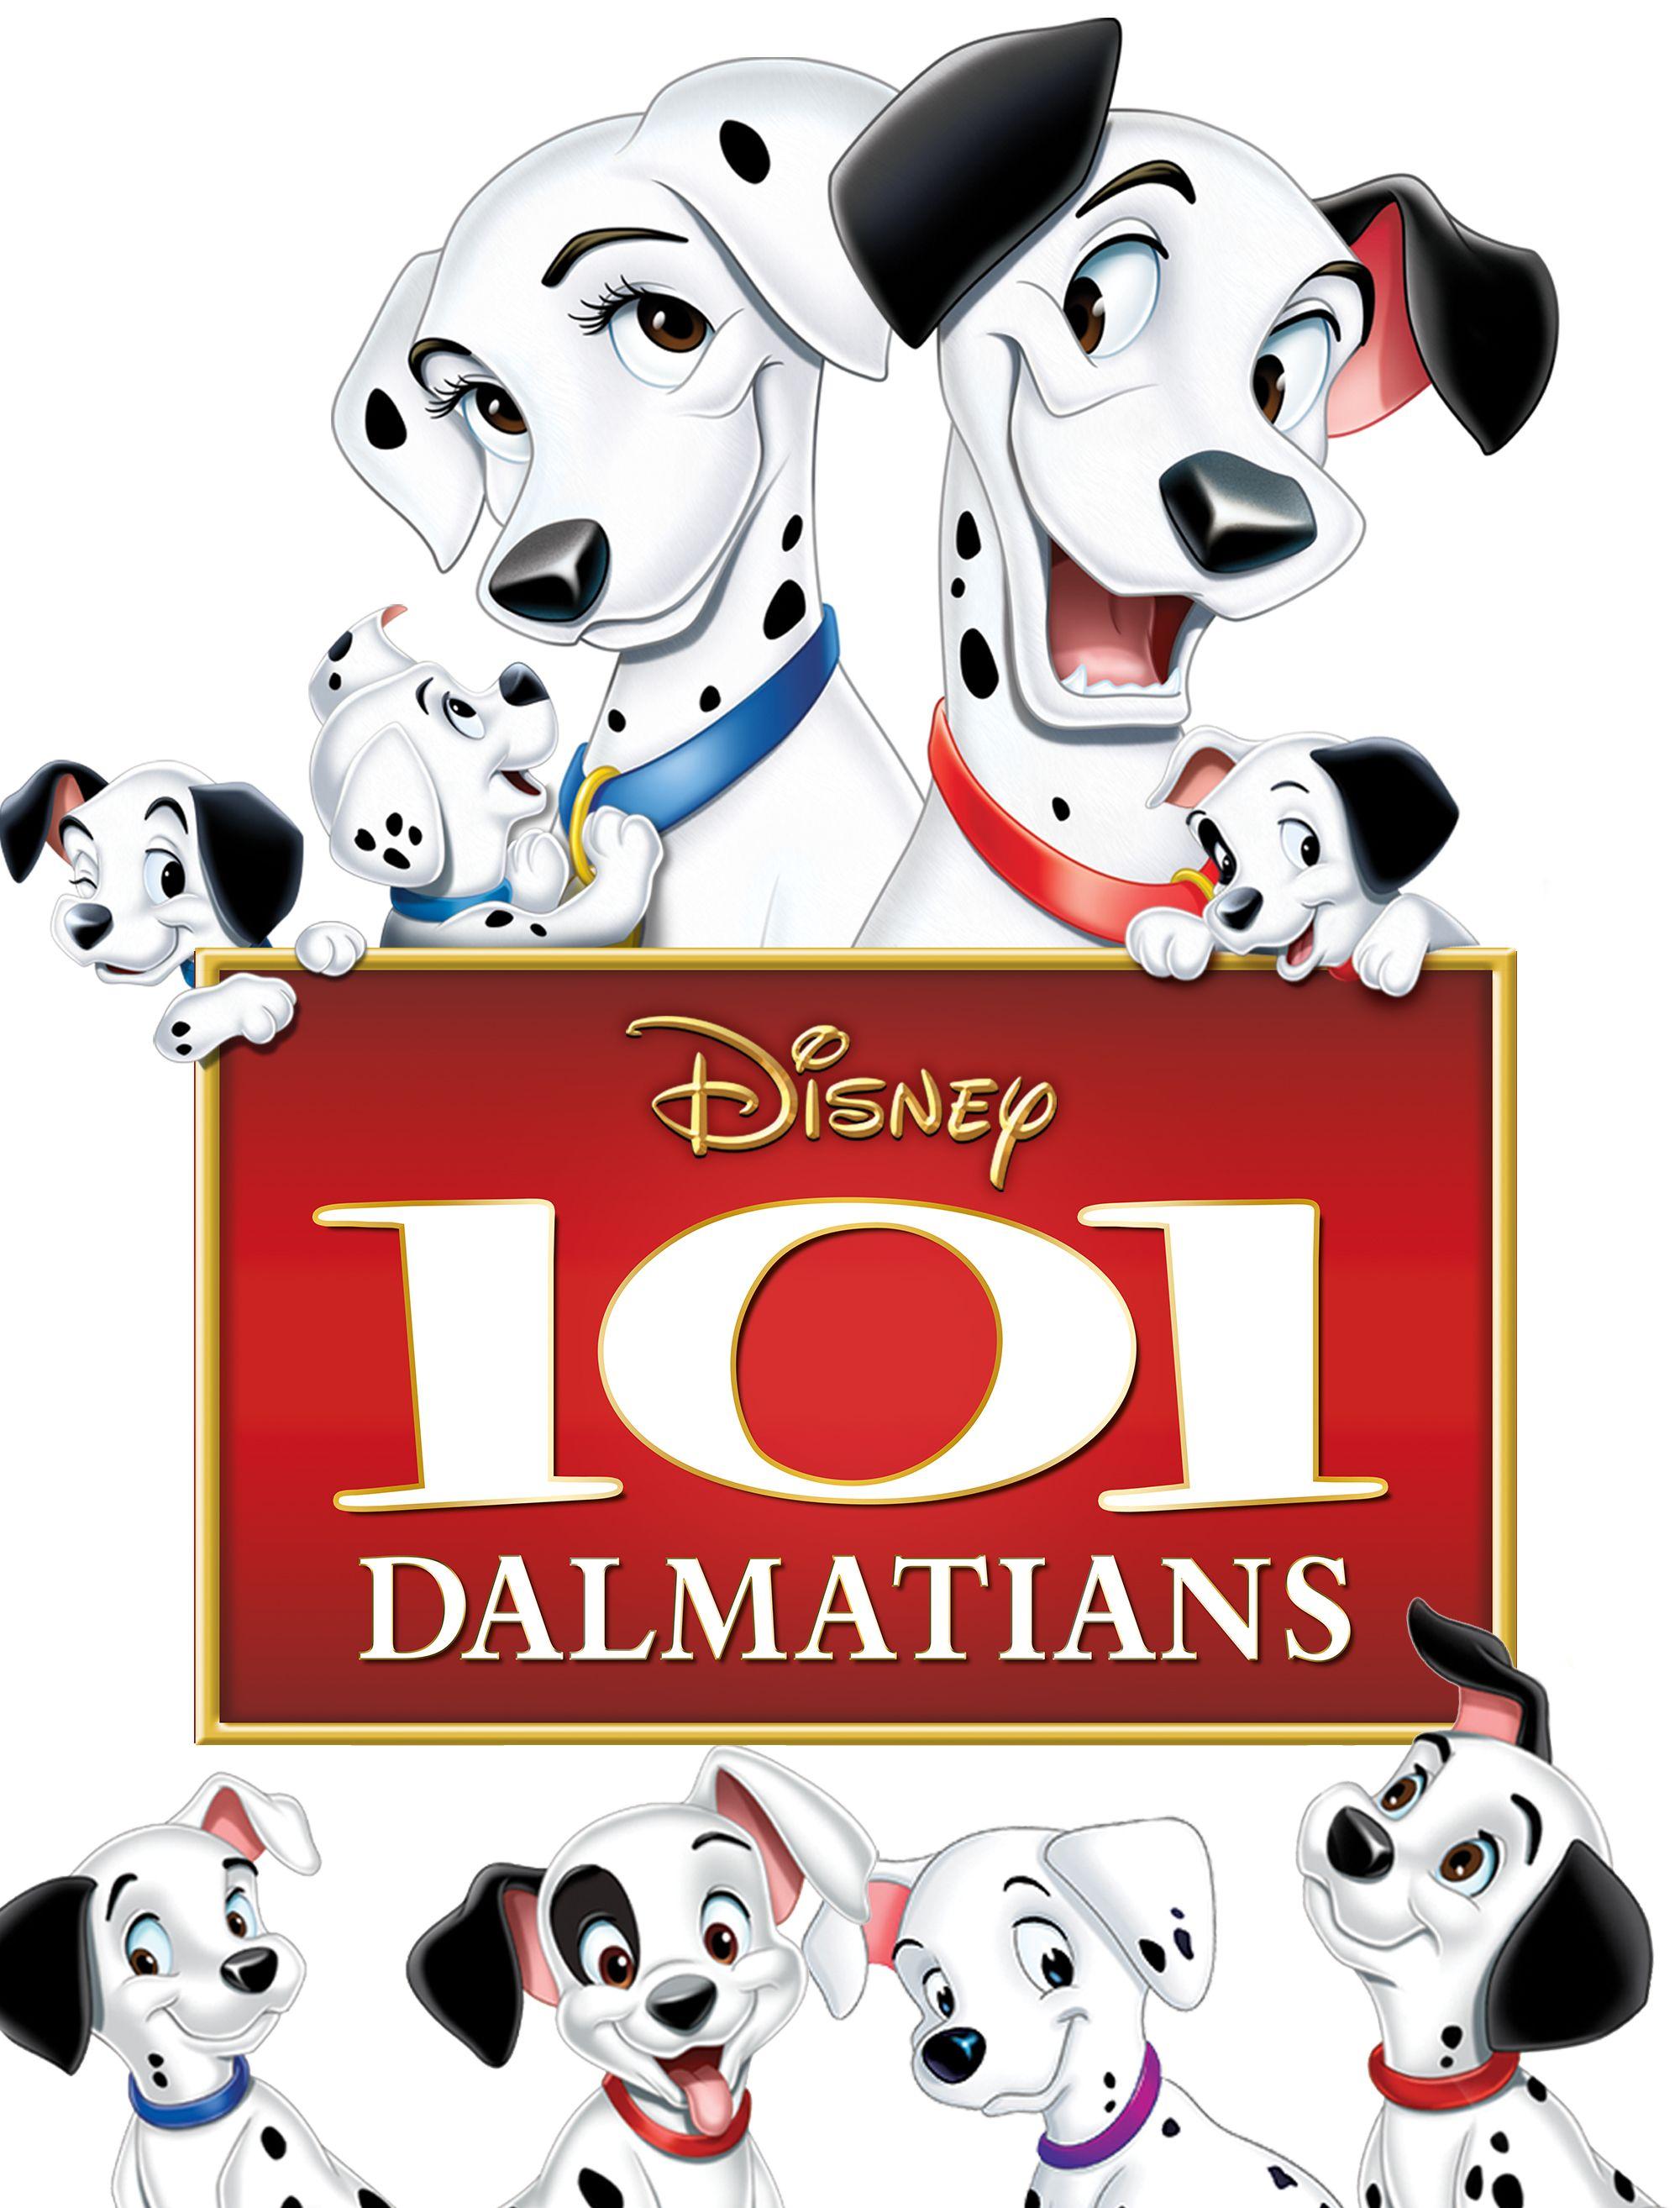 Dalmatians Wallpaper, 50 High Quality 101 Dalmatians Wallpaper